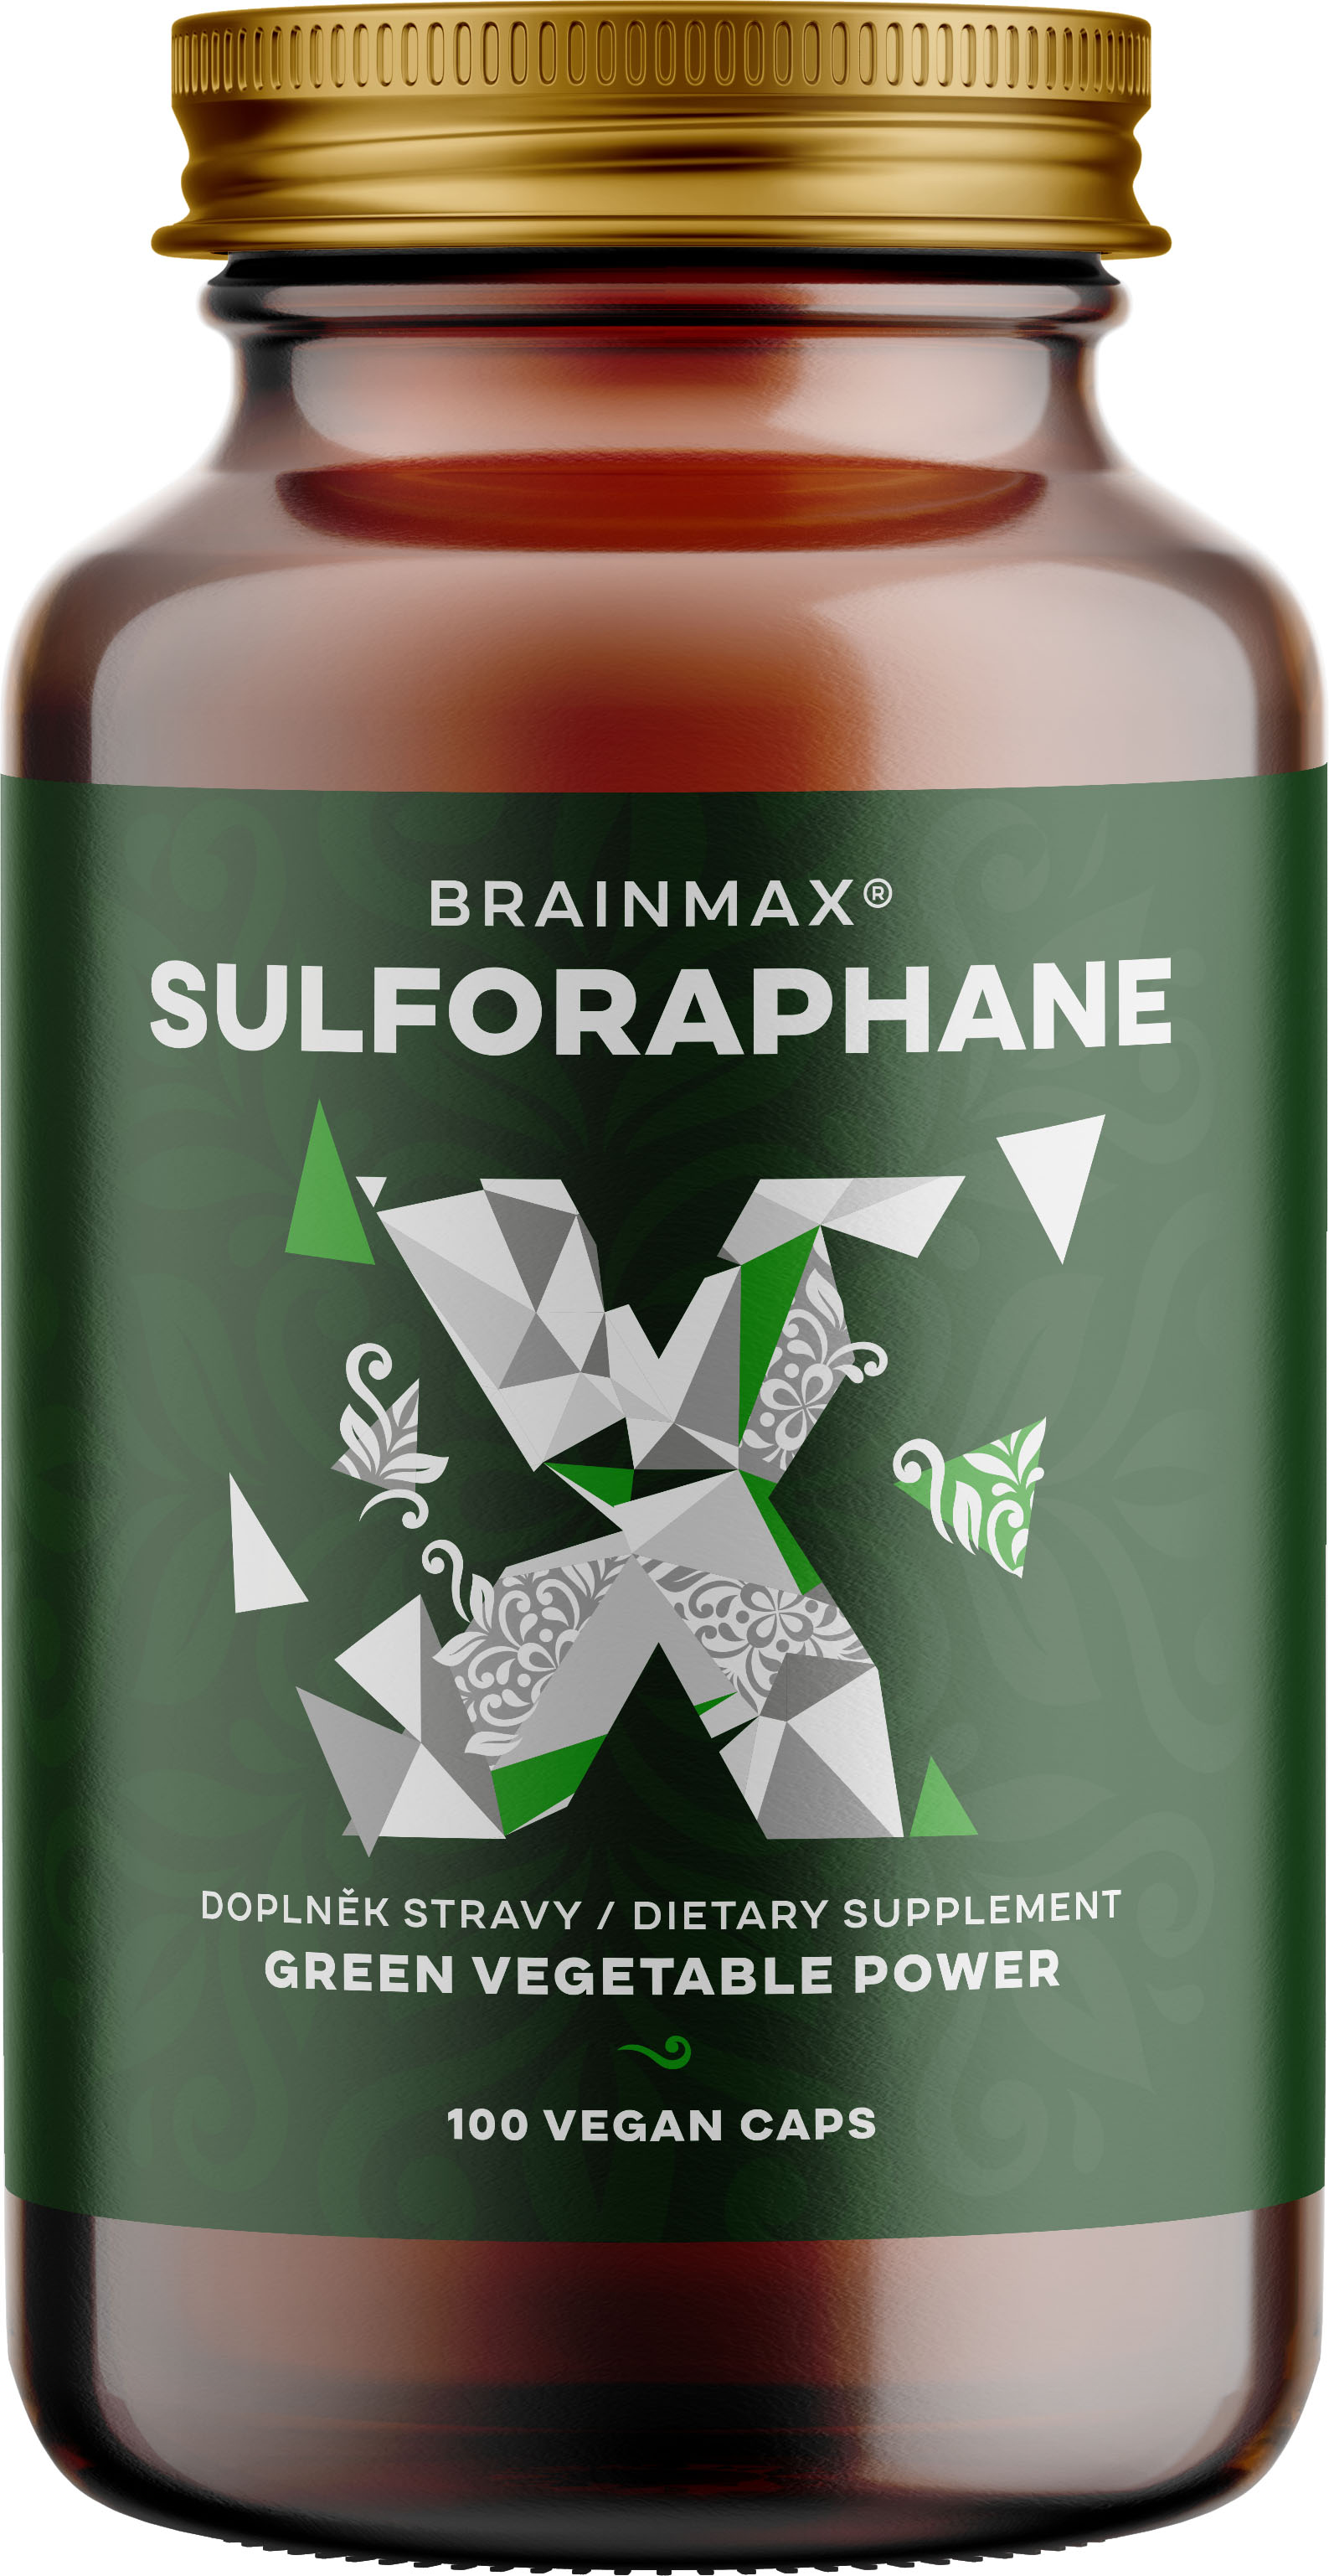 BrainMax Sulforaphane 35 mg, Sulforafan, 100 rostlinných kapslí Sulforafan s myrosinázou, multispektrální účinek podpořený studiemi, 35 mg, doplněk stravy